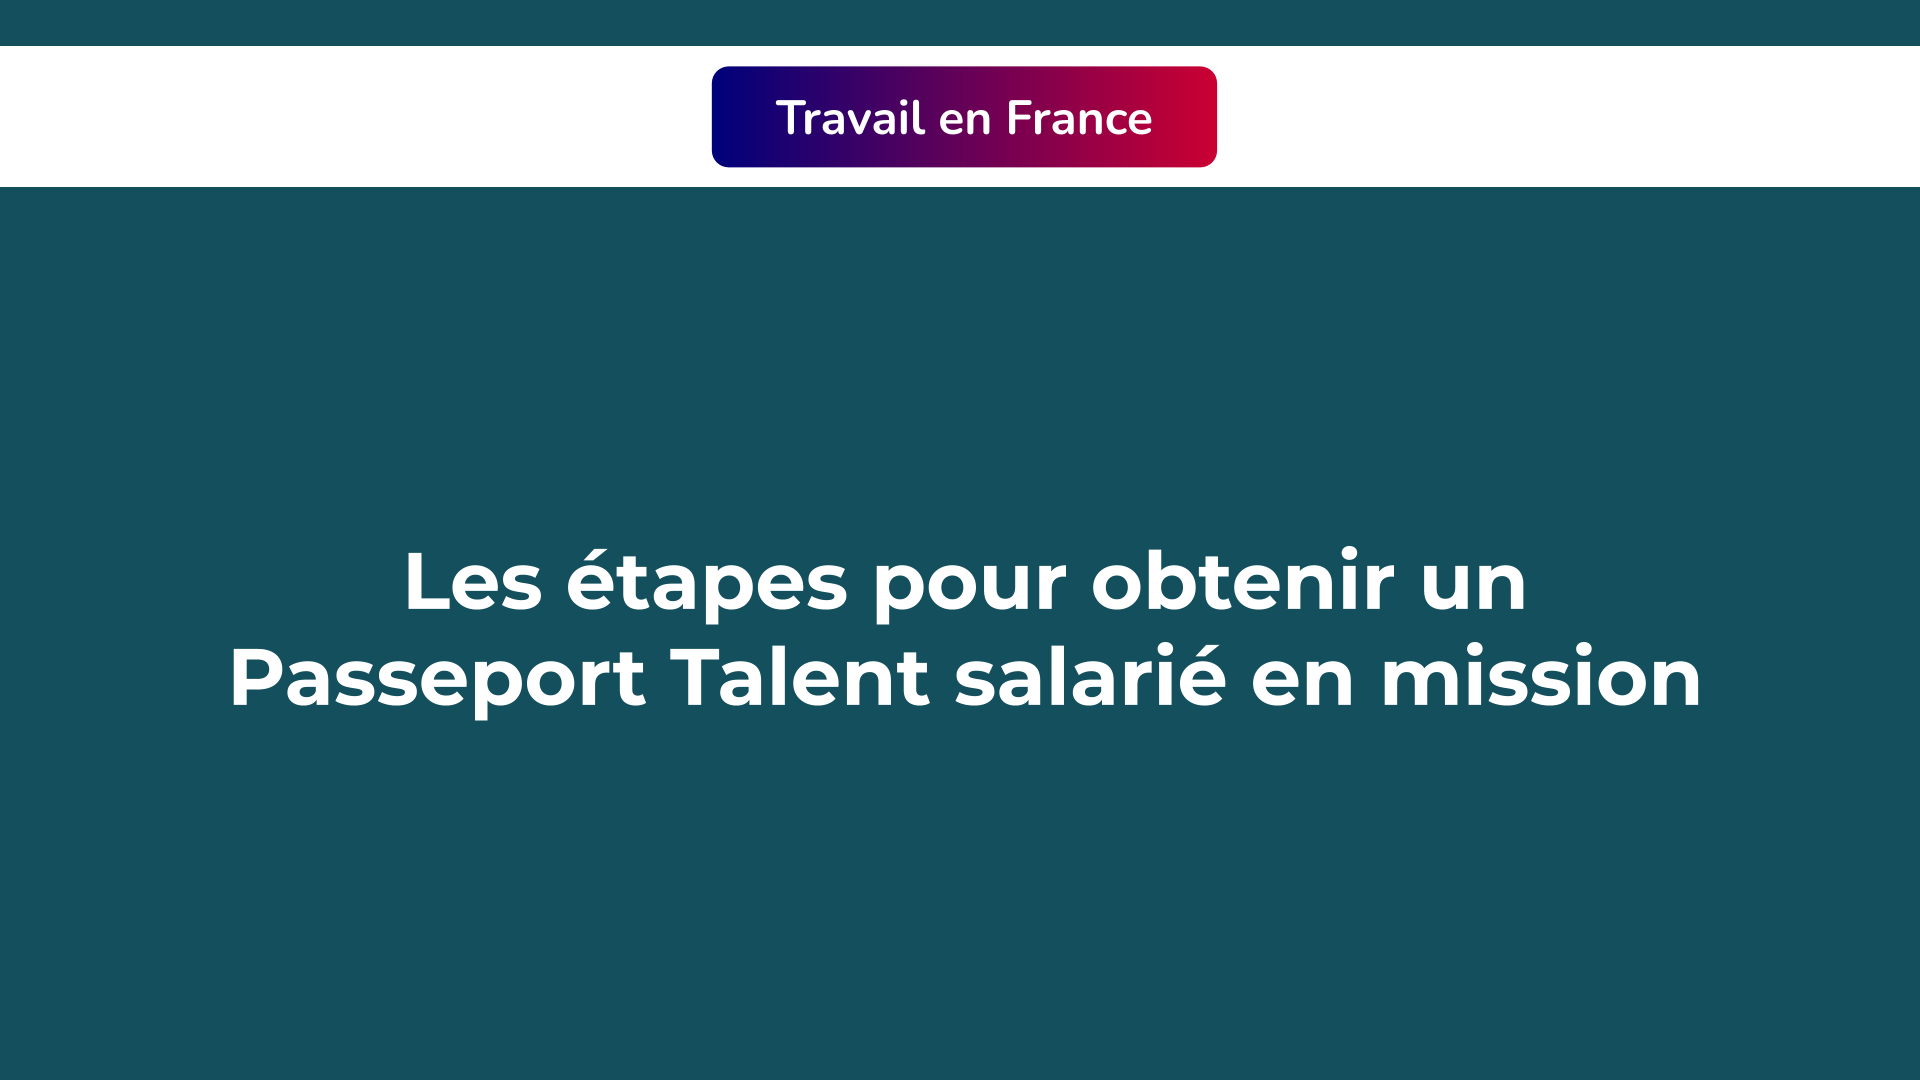 Passeport Talent salarié en mission